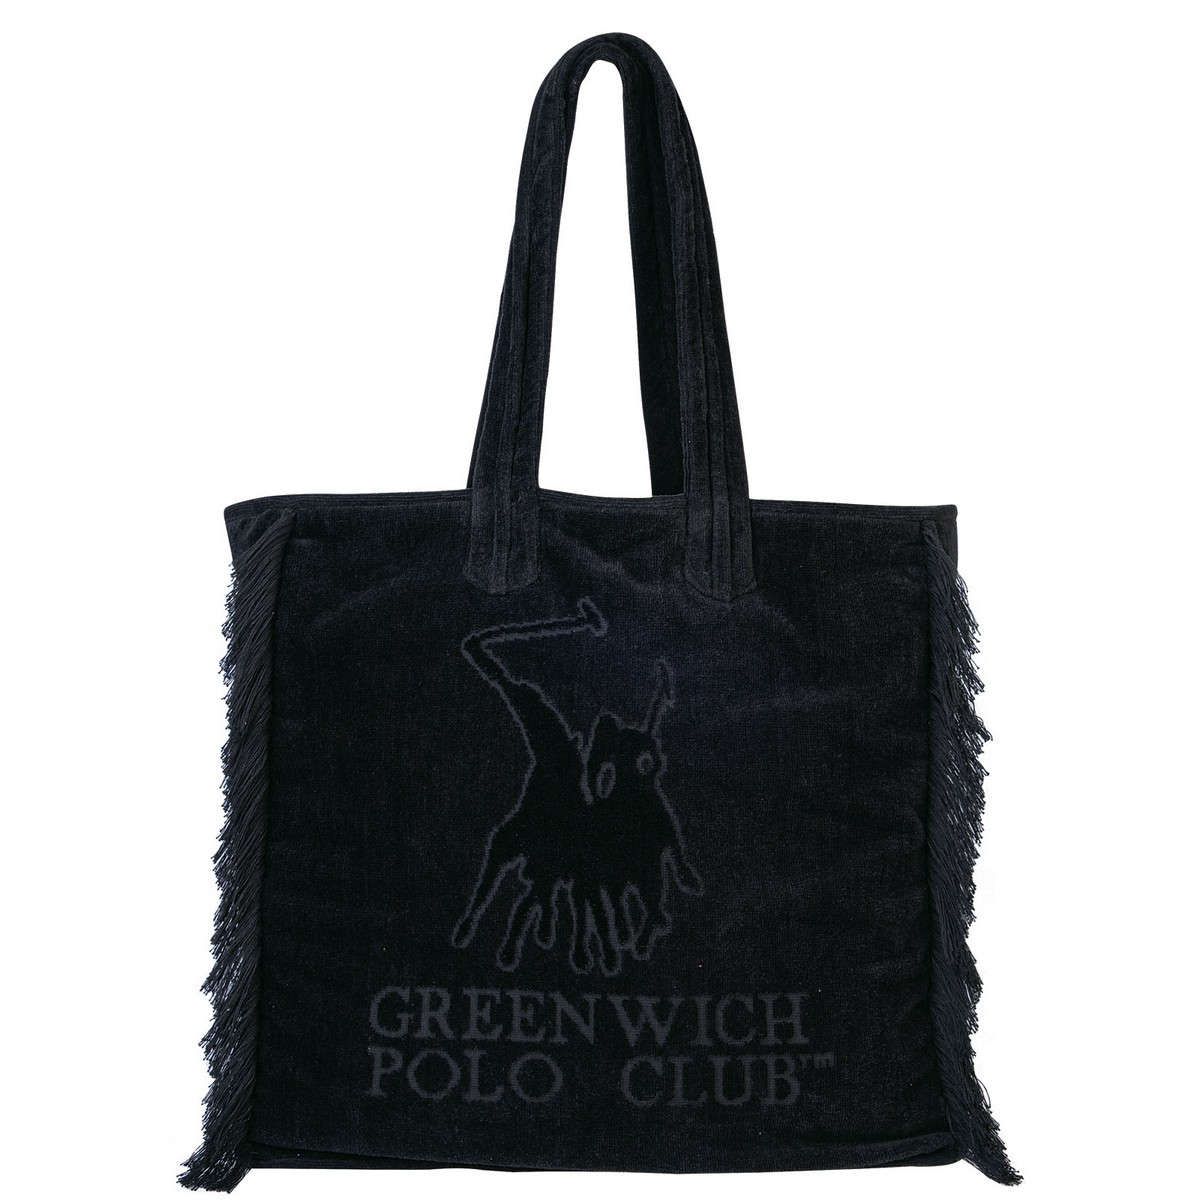 Τσάντα θαλάσσης 3656 black greenwich polo club